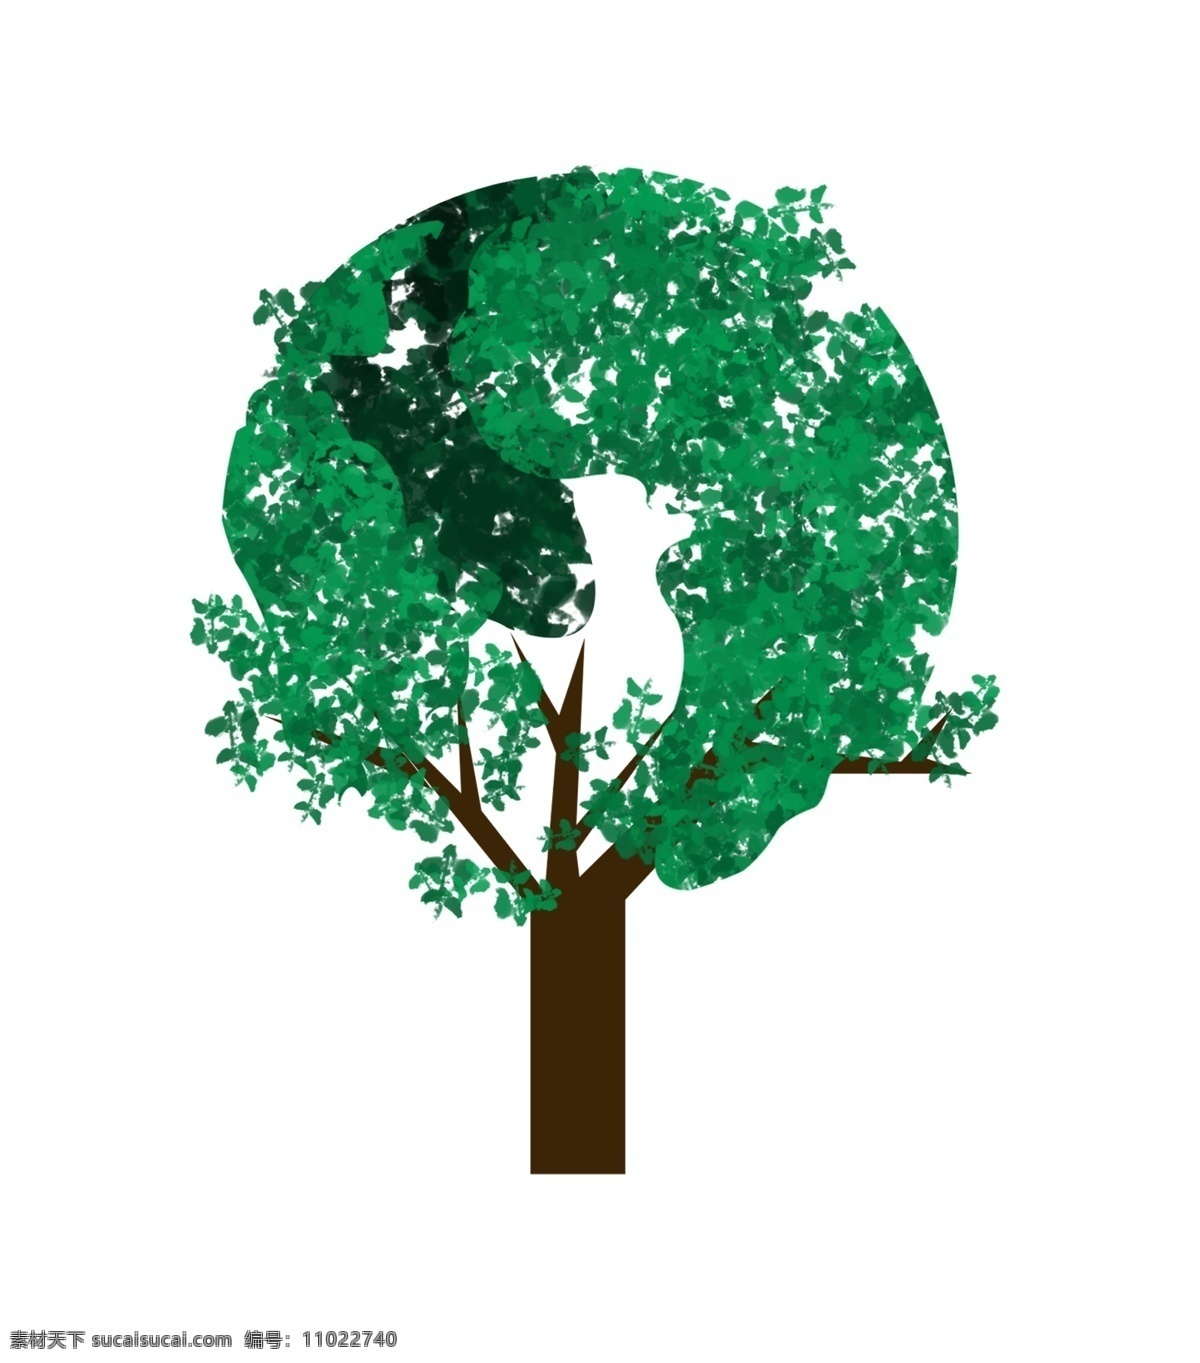 绿色环保 树木 地球 绿色 环保 绿叶 卡通 简约 植物 一个 形状 树 清新 可爱 树叶 手绘 蓝色